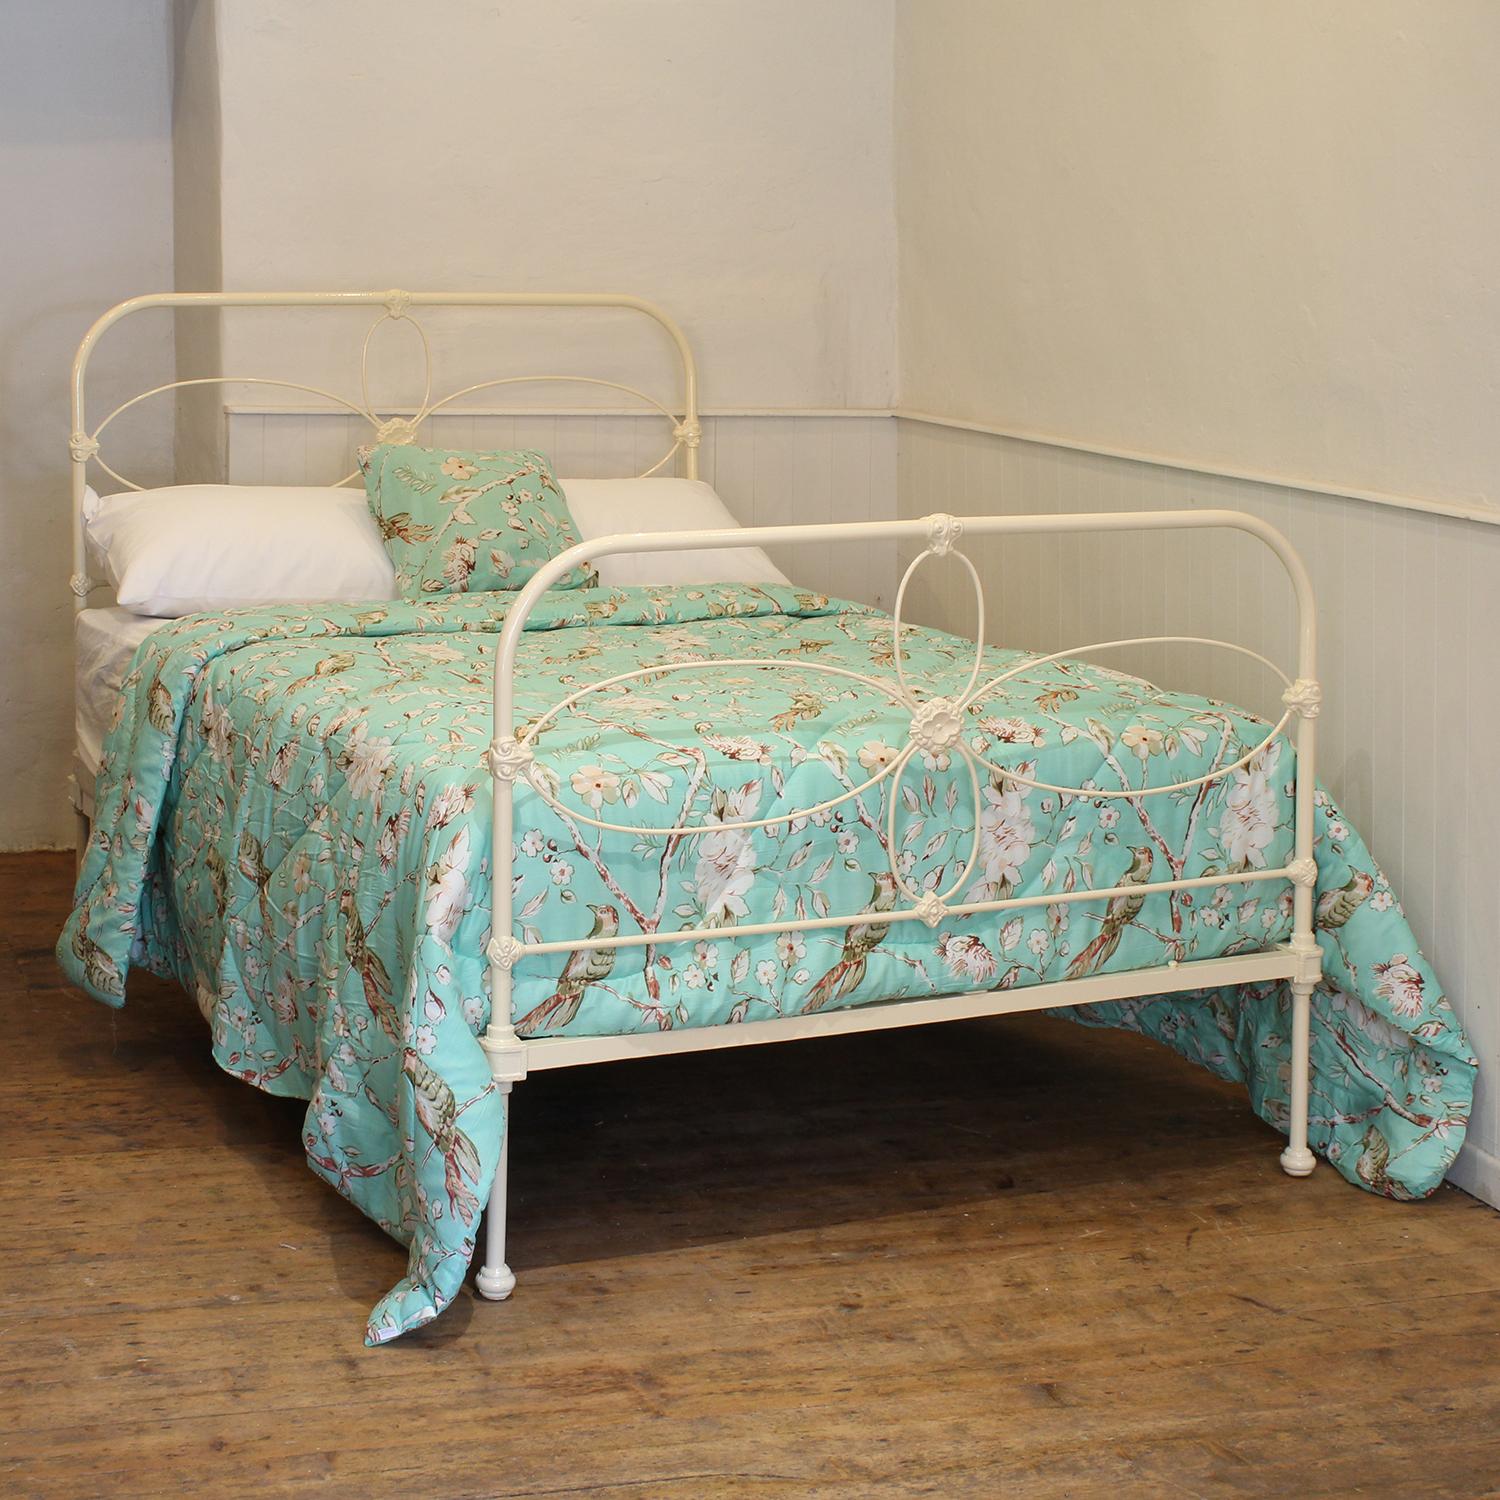 Ein viktorianisches Bettgestell aus Gusseisen in Creme mit bogenförmigen Paneelen und zierlichen, dekorativen Gussteilen.

Dieses Bett ist für ein Doppelbett mit einer Breite von 54 Zoll (135 cm) und einer Matratze geeignet. 

Im Preis inbegriffen